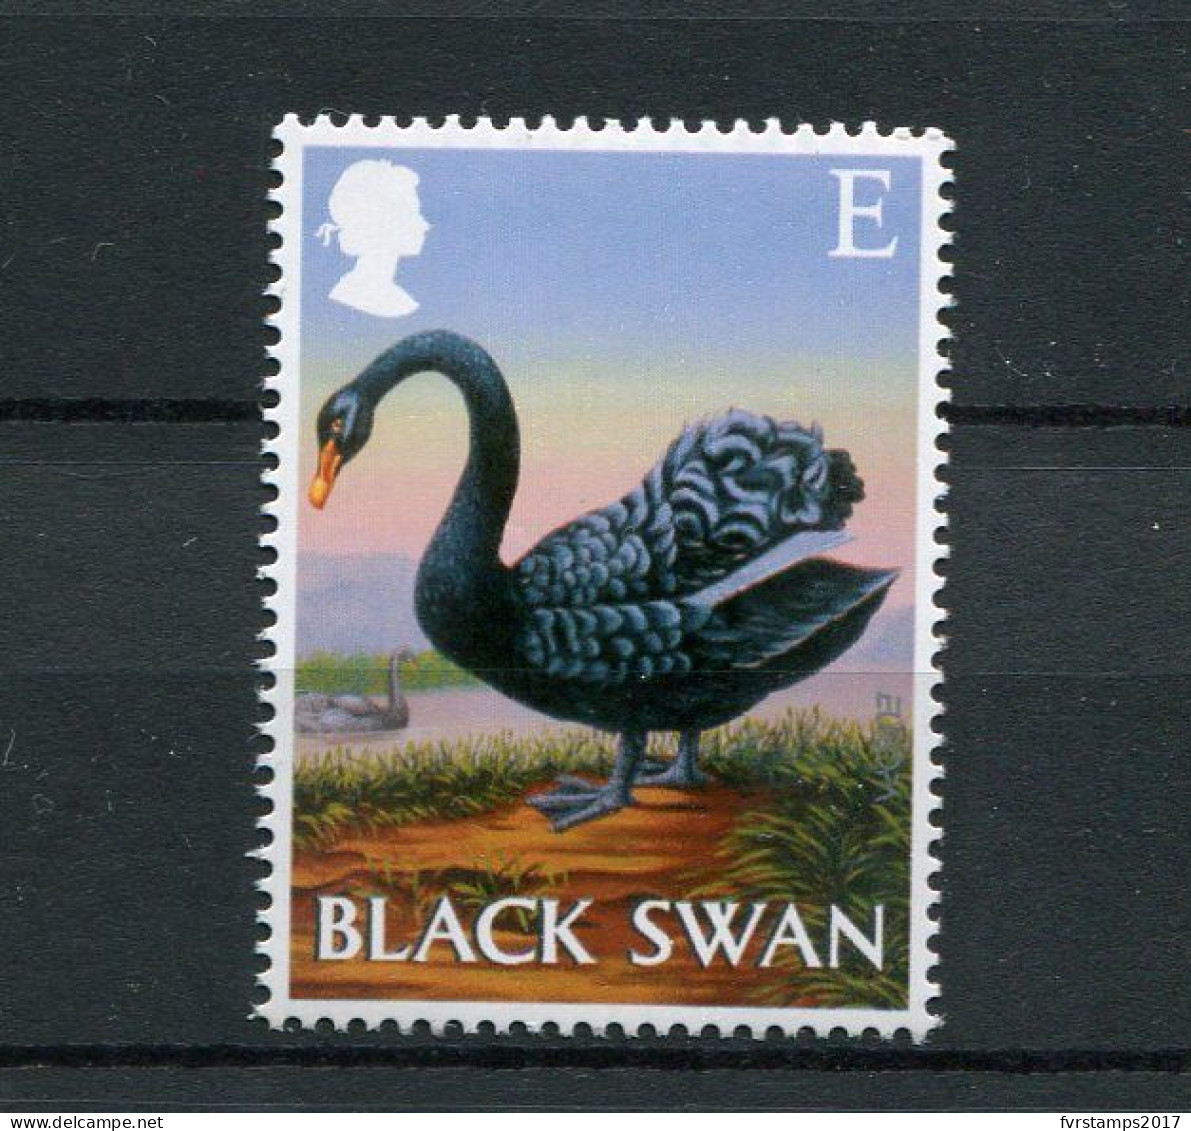 UK Great Britain - 2003 - Mi 2148 - MNH ** - Black Swan - Birds Vogels Oiseaux Fauna - Schwäne